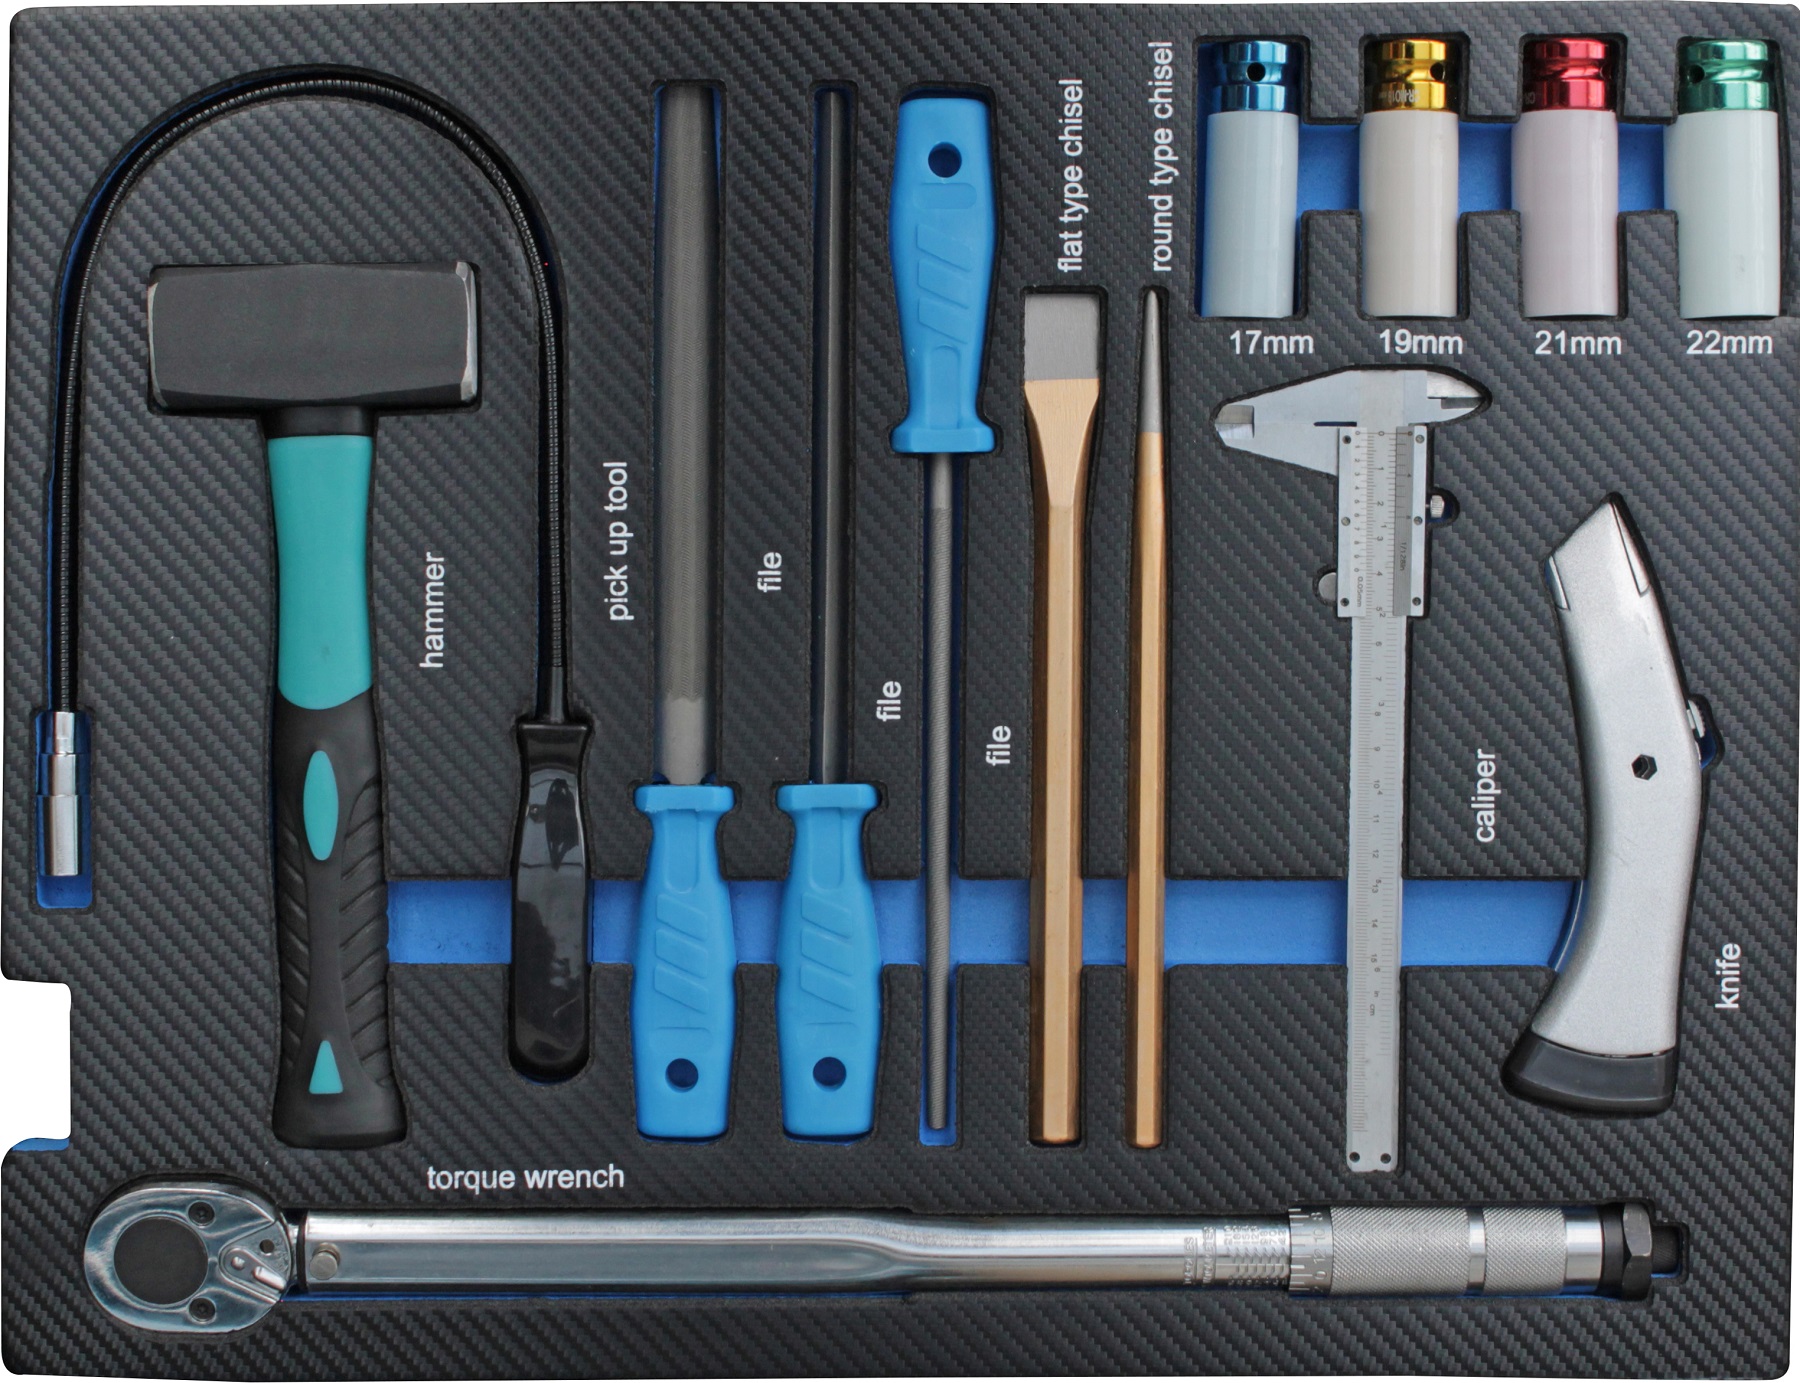 Werkzeugeinleger mit Fäustel, Drehmomentschlüssel, Felgennüsse, Meißel etc. in Carbon Optik